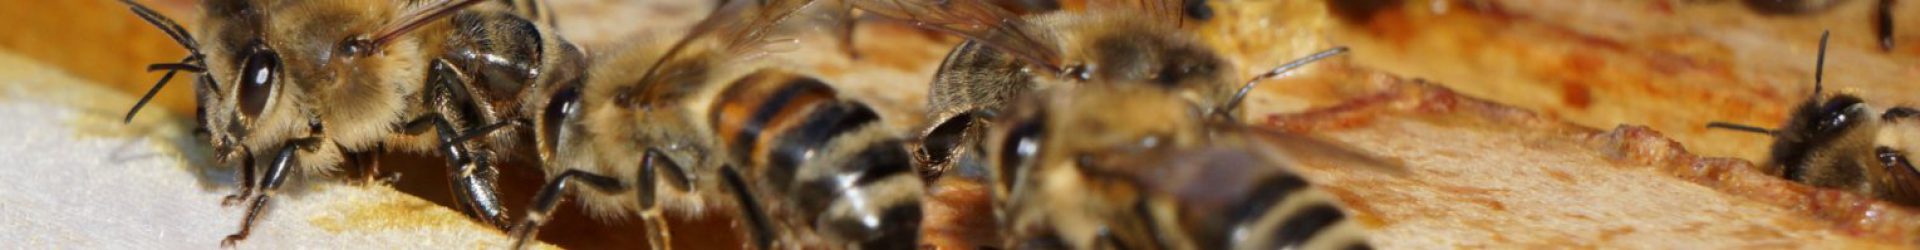 Impressionen beim Bienenvölker-Check